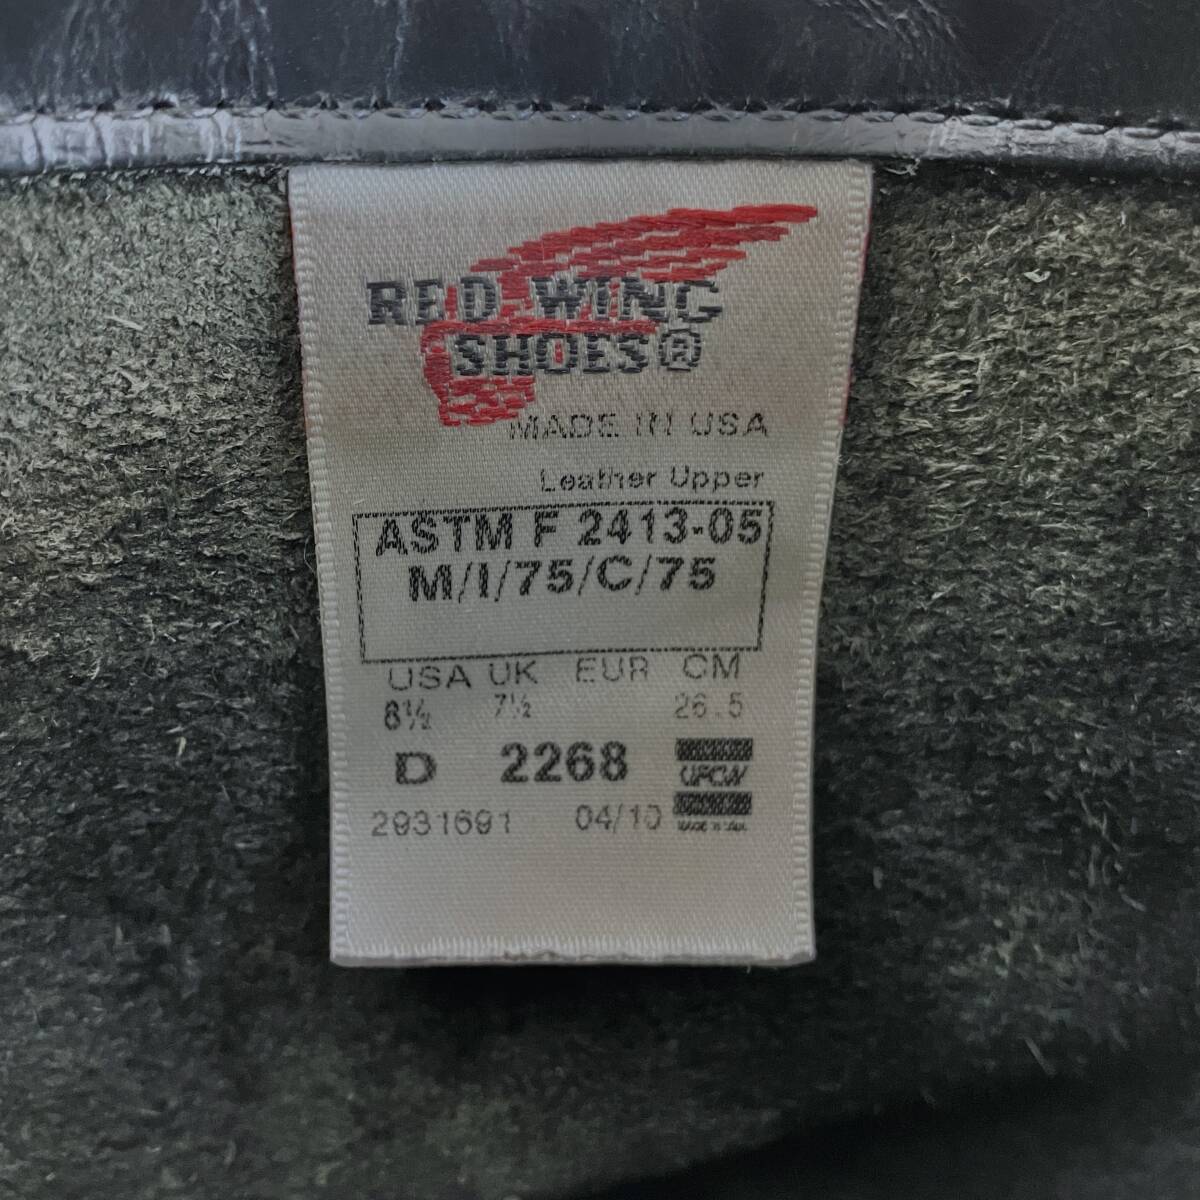 REDWING 2268 ASTM F 2413-05 エンジニアブーツ スティールトゥ usa製 US8.5 26.5 ブラック 黒 レザー レッドウィング バイカー アメカジ_画像2